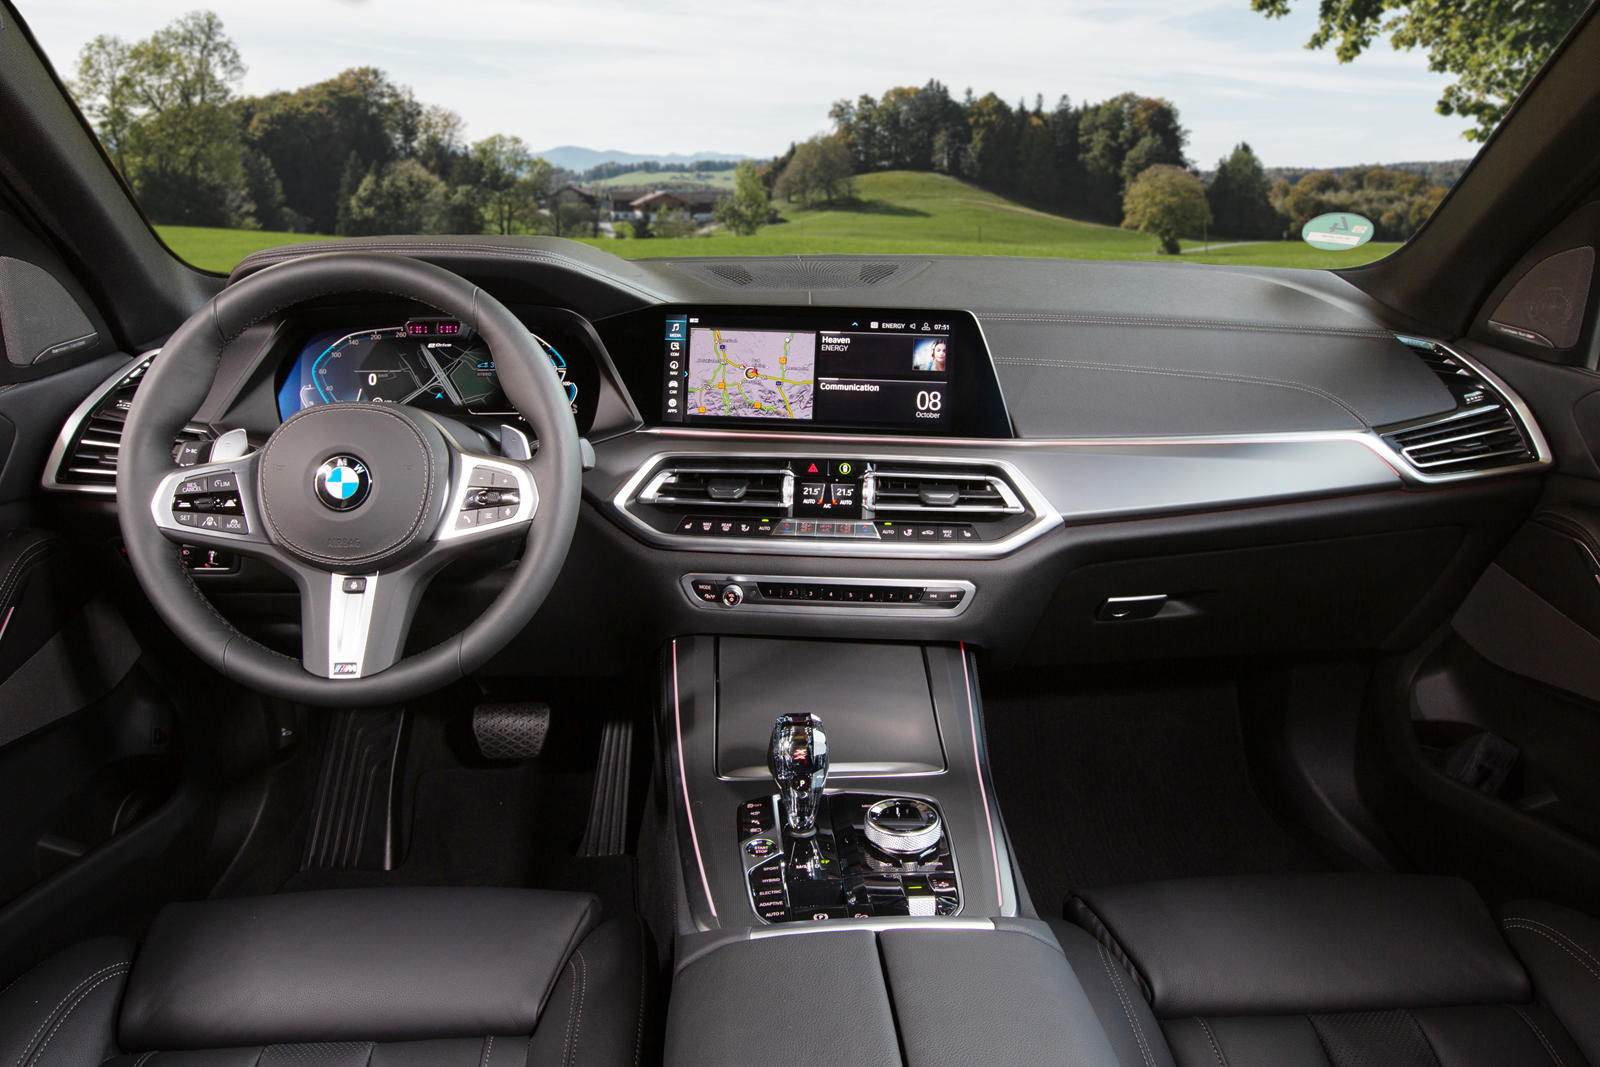 2021 BMW X5 Plug-In Hybrid Finally Arrives In America